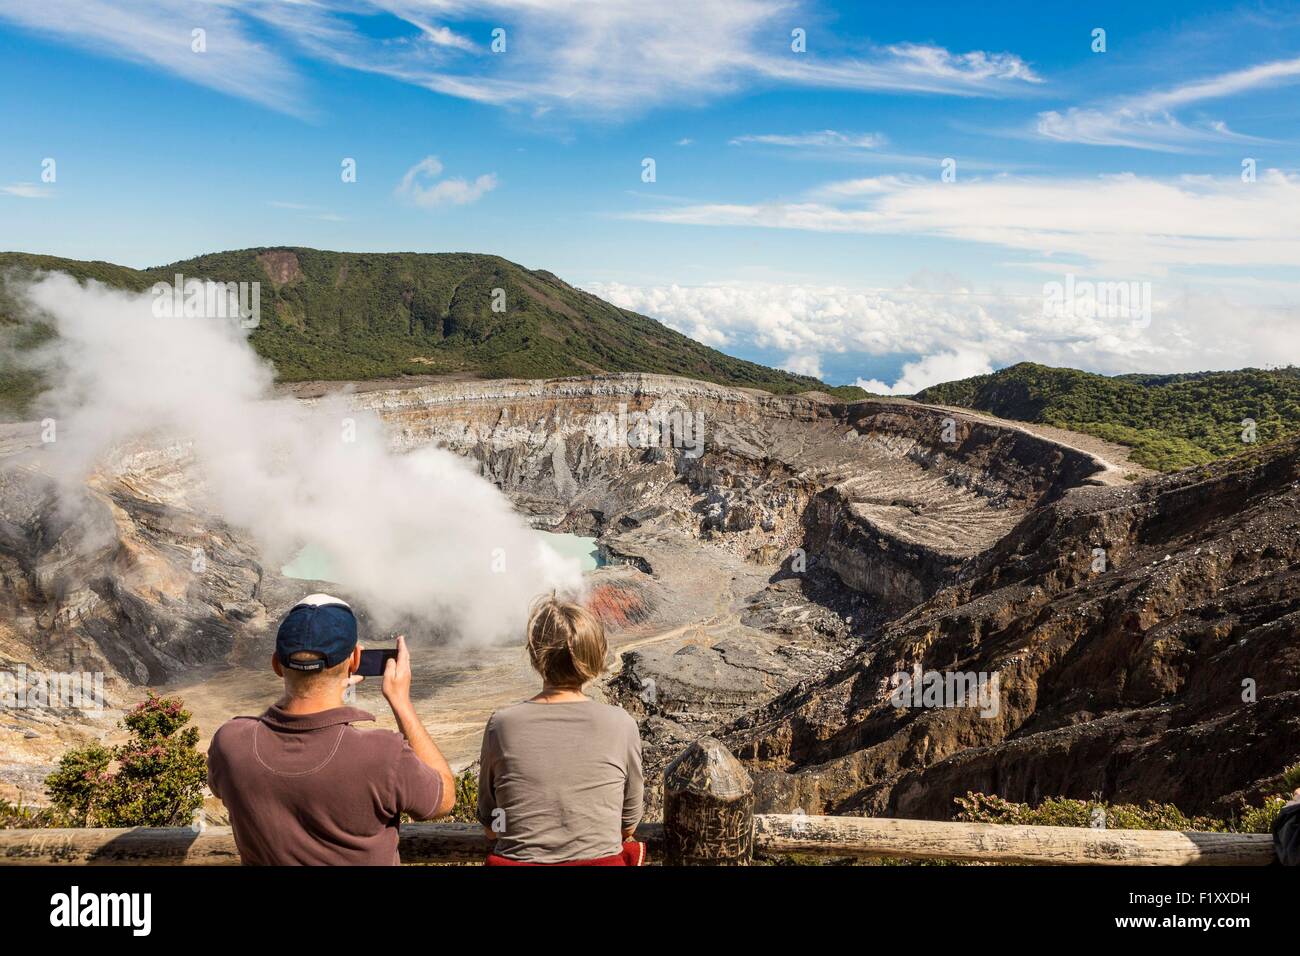 Costa Rica, provincia di Alajuela, il Parco Nazionale del Vulcano Poas, il cratere del vulcano Poas Foto Stock